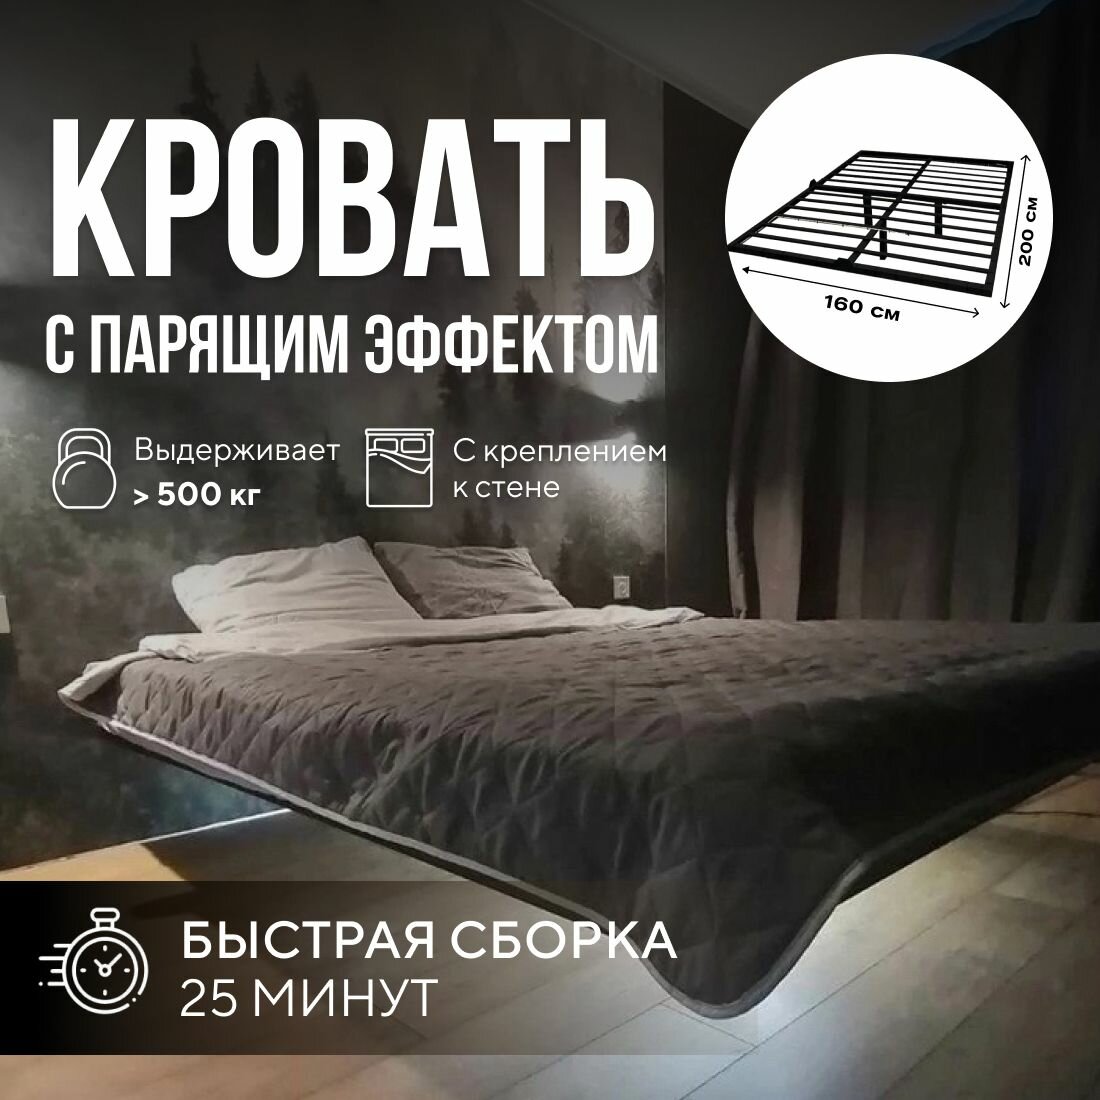 Парящая двуспальная кровать 160х200 см. Черный металлический каркас - основание с креплением к стене, 3 ножки